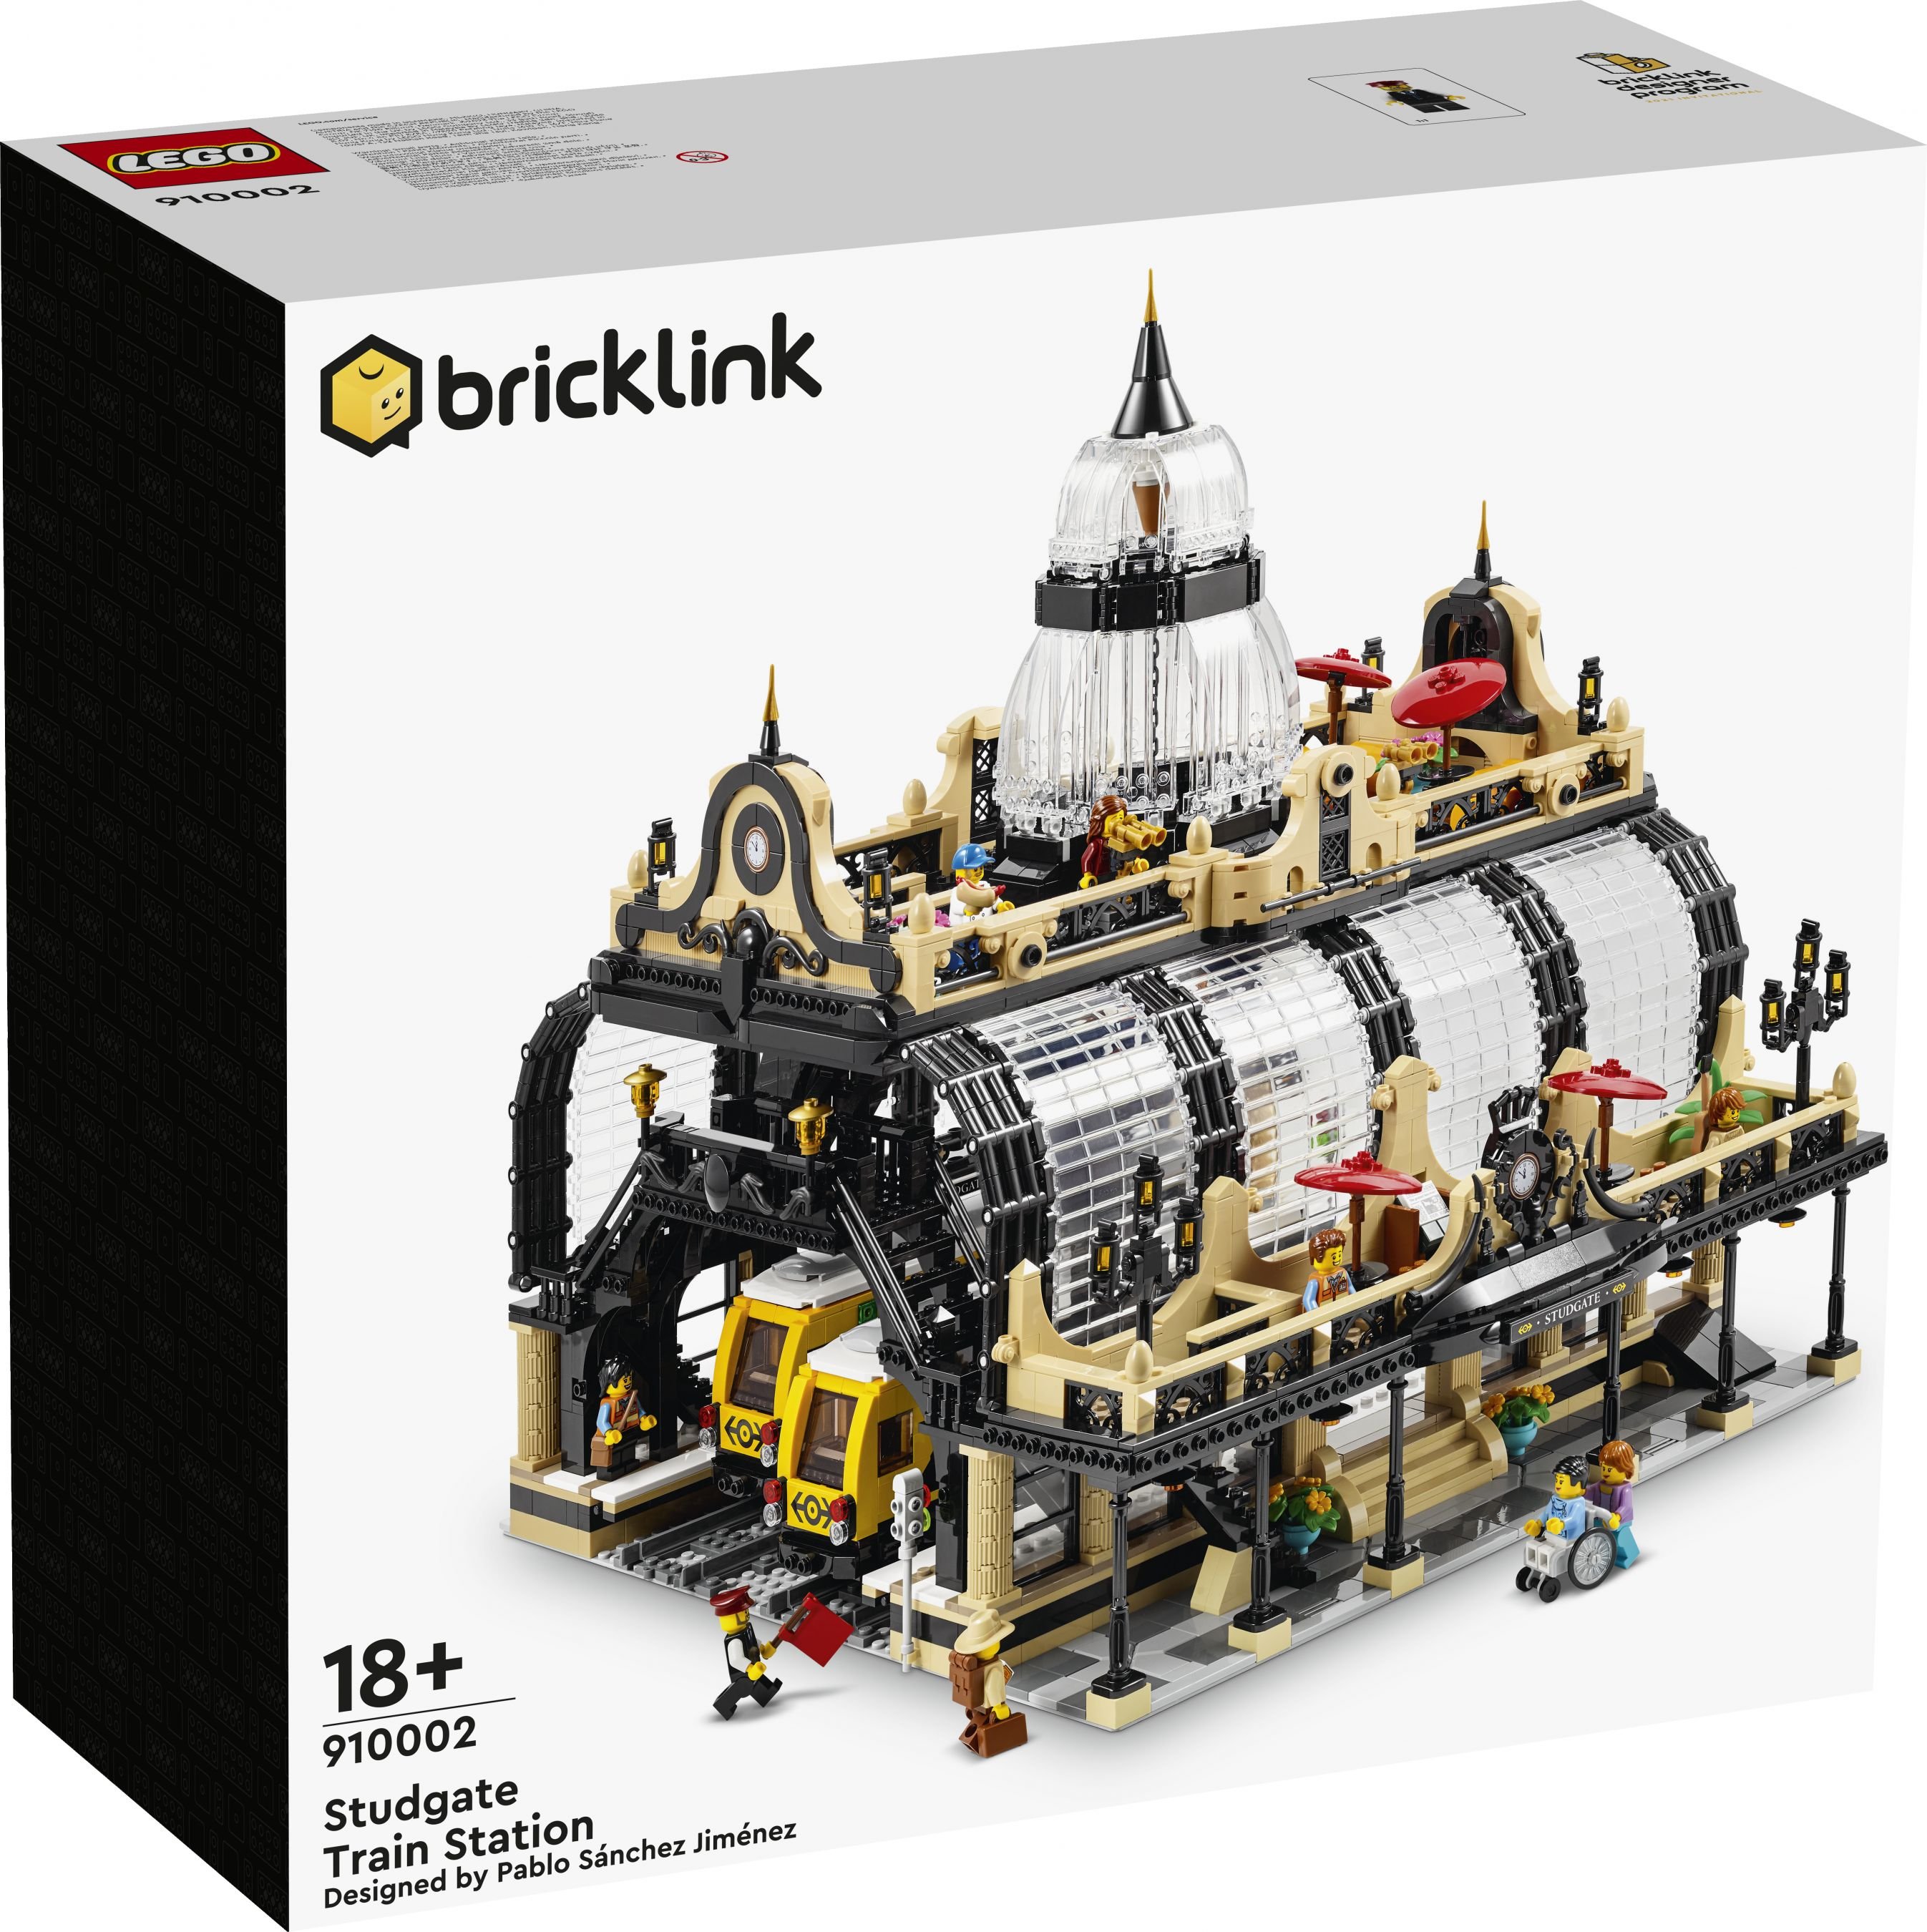 LEGO Bricklink 910002 Noppenheimer Bahnhof LEGO_910002_Box1_v29.jpg